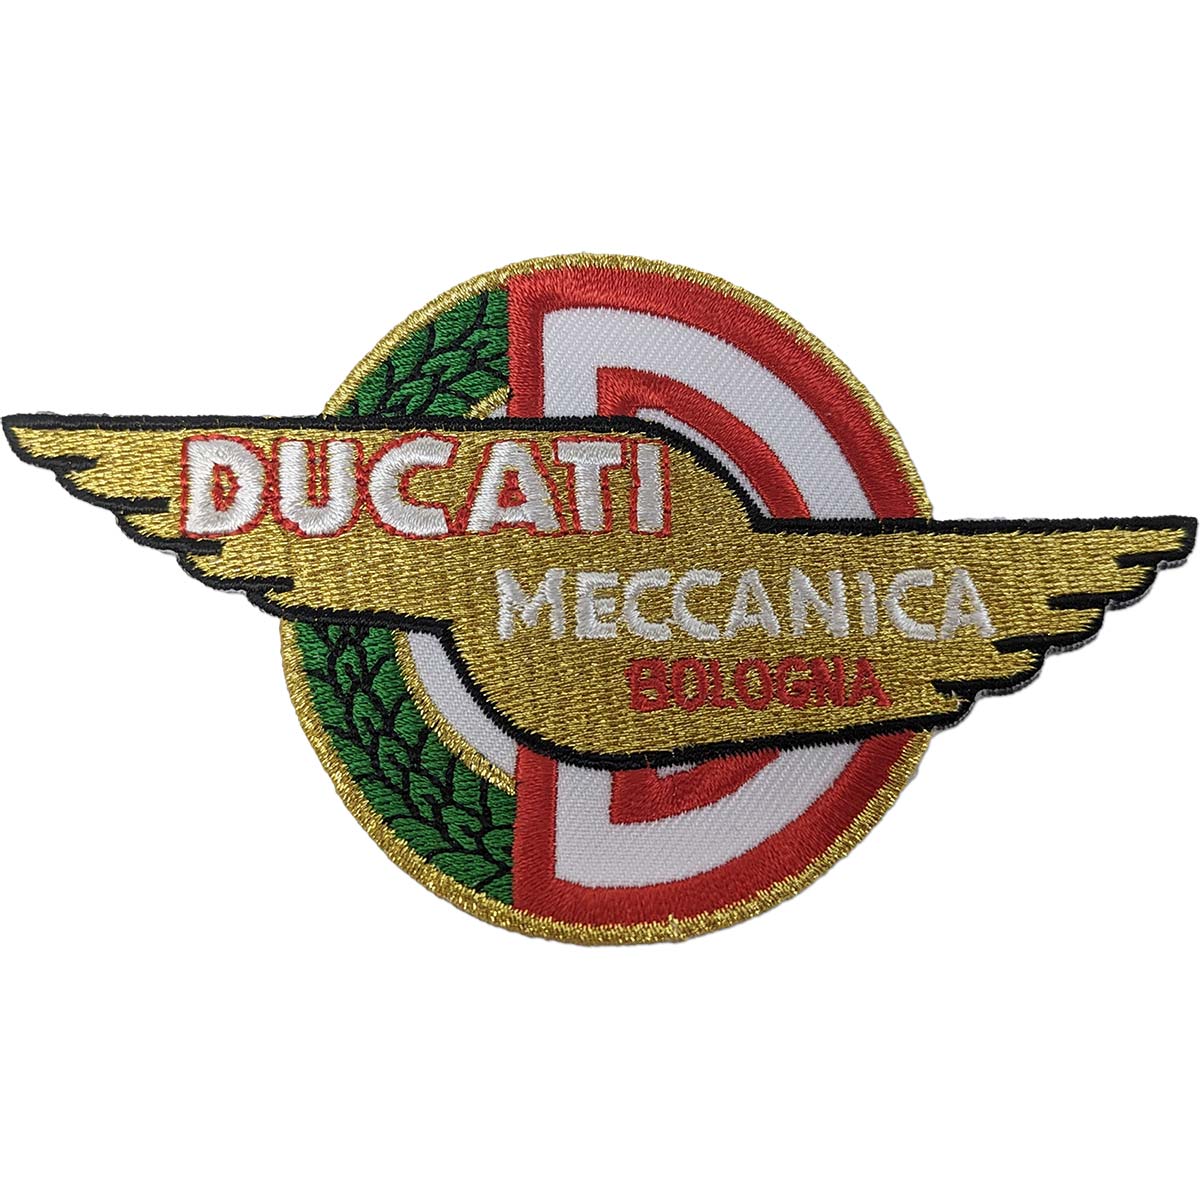 ドゥカティ メカニカ ワッペン パッチ DUCATI MECCANICA WING